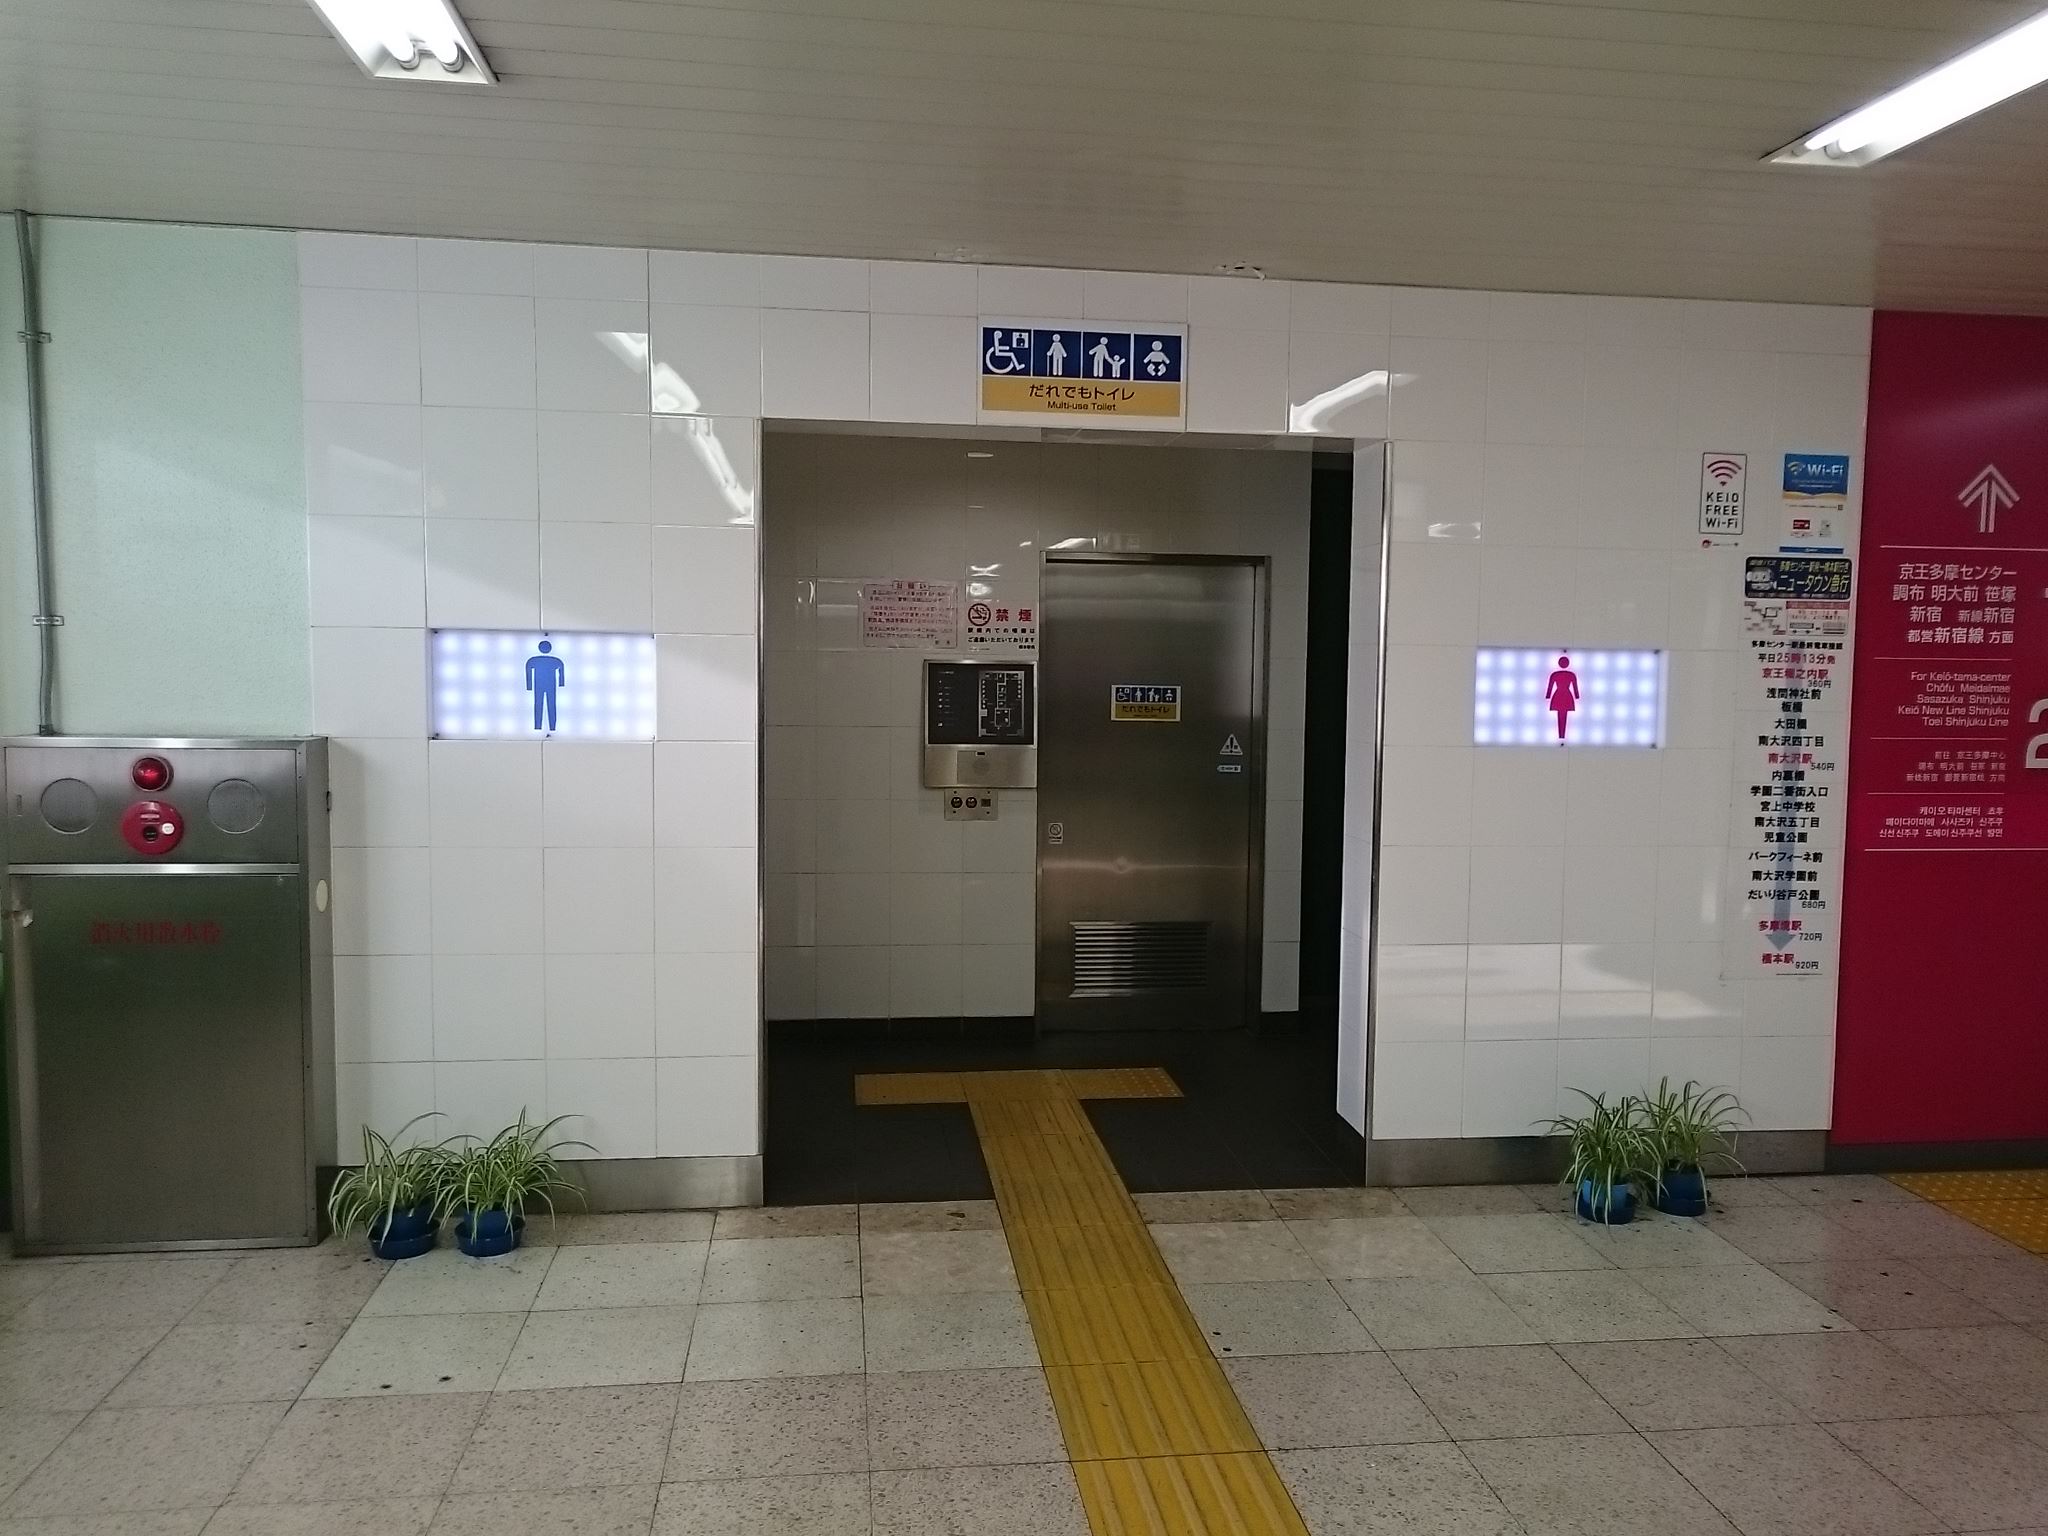 橋本駅(京王) トイレペディア